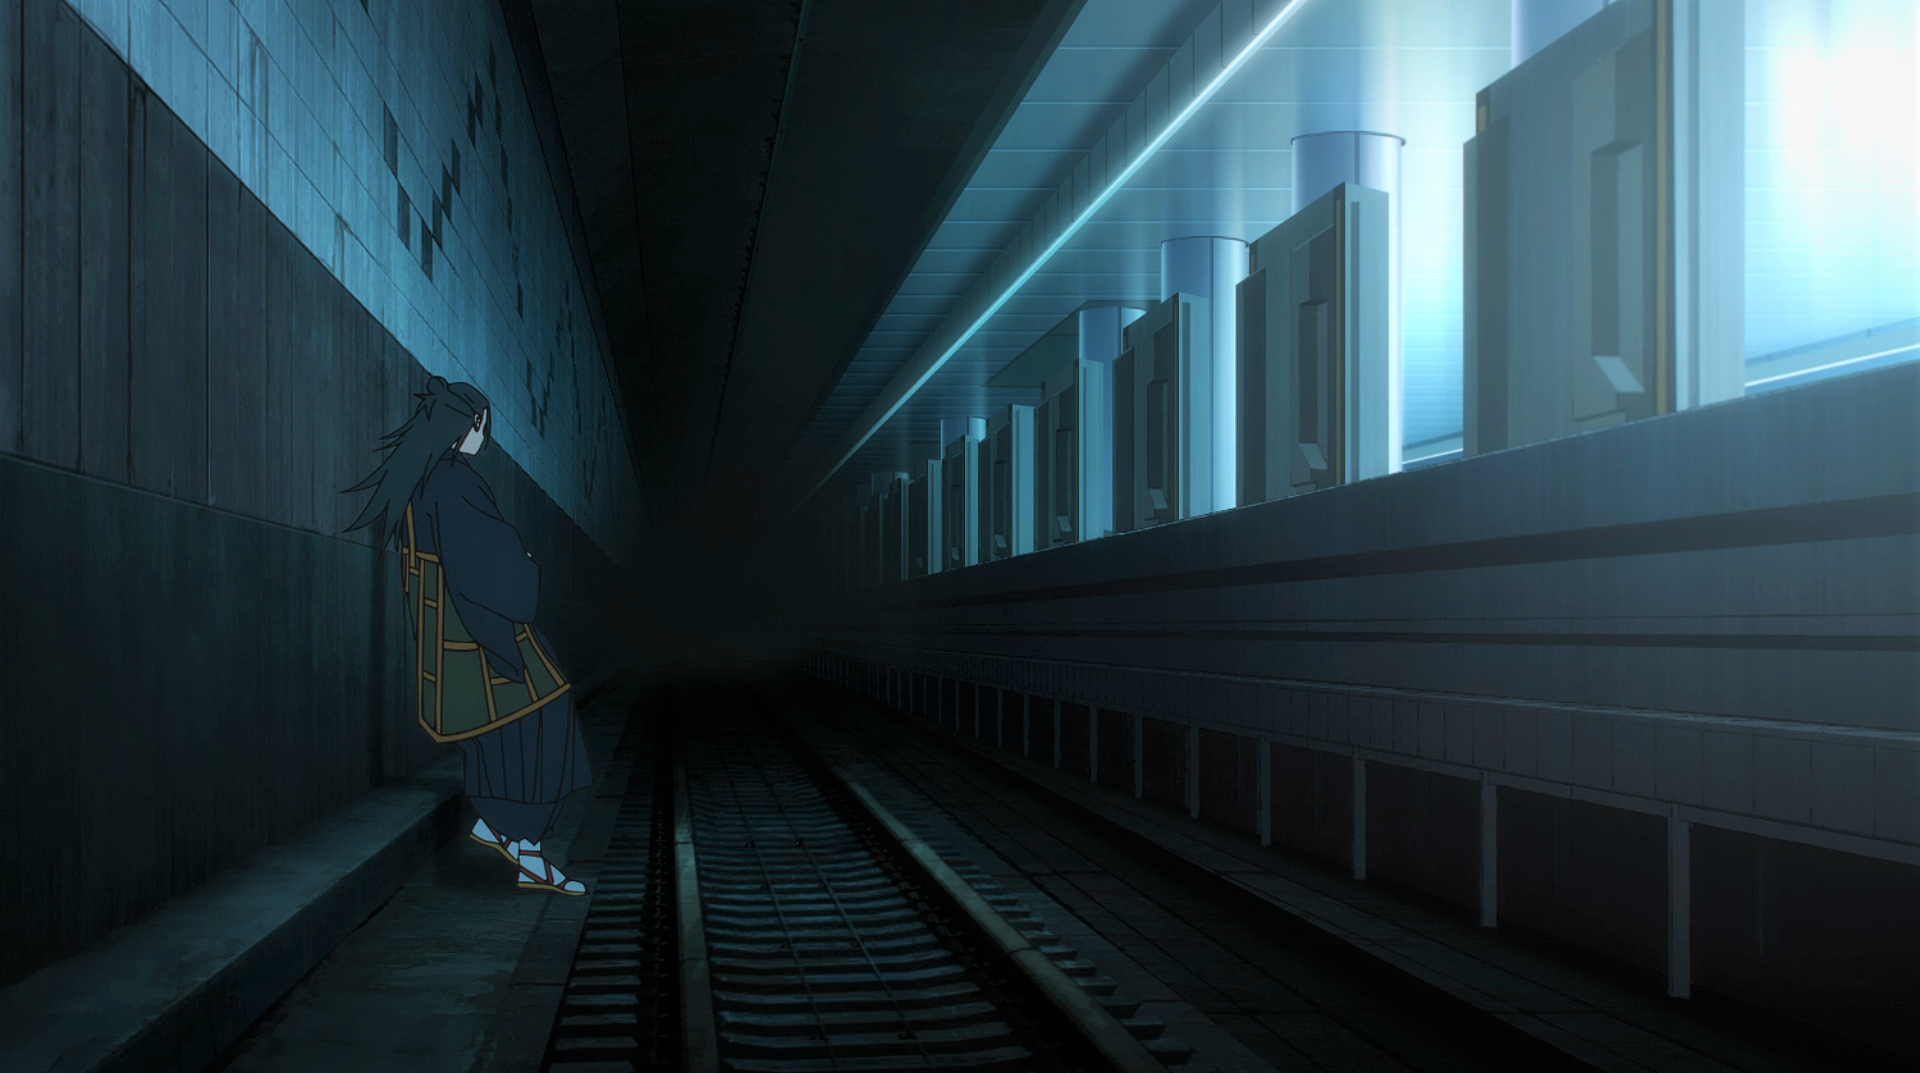 Anime 1920x1073 Jujutsu Kaisen Suguru Geto kimono Bun subway tunnel anime anime screenshot anime boys sandals lights